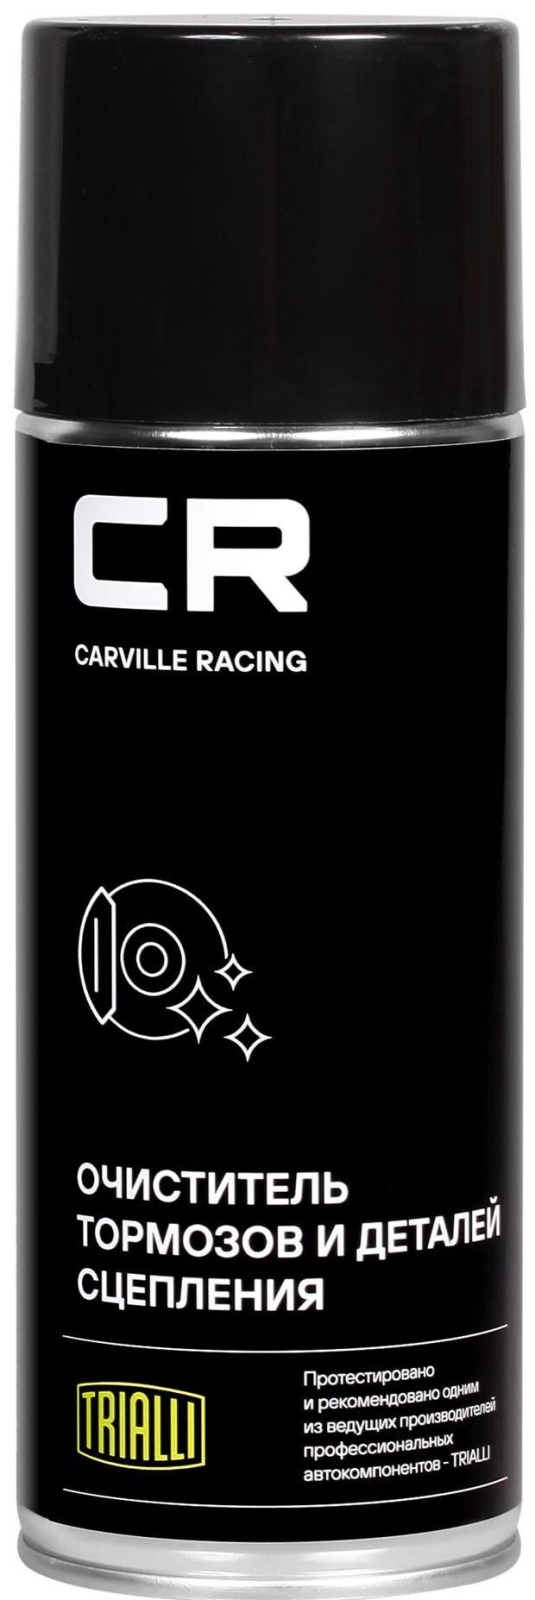 Очиститель тормозов и деталей сцепления CARVILLE RACING 520 мл (S7520125)